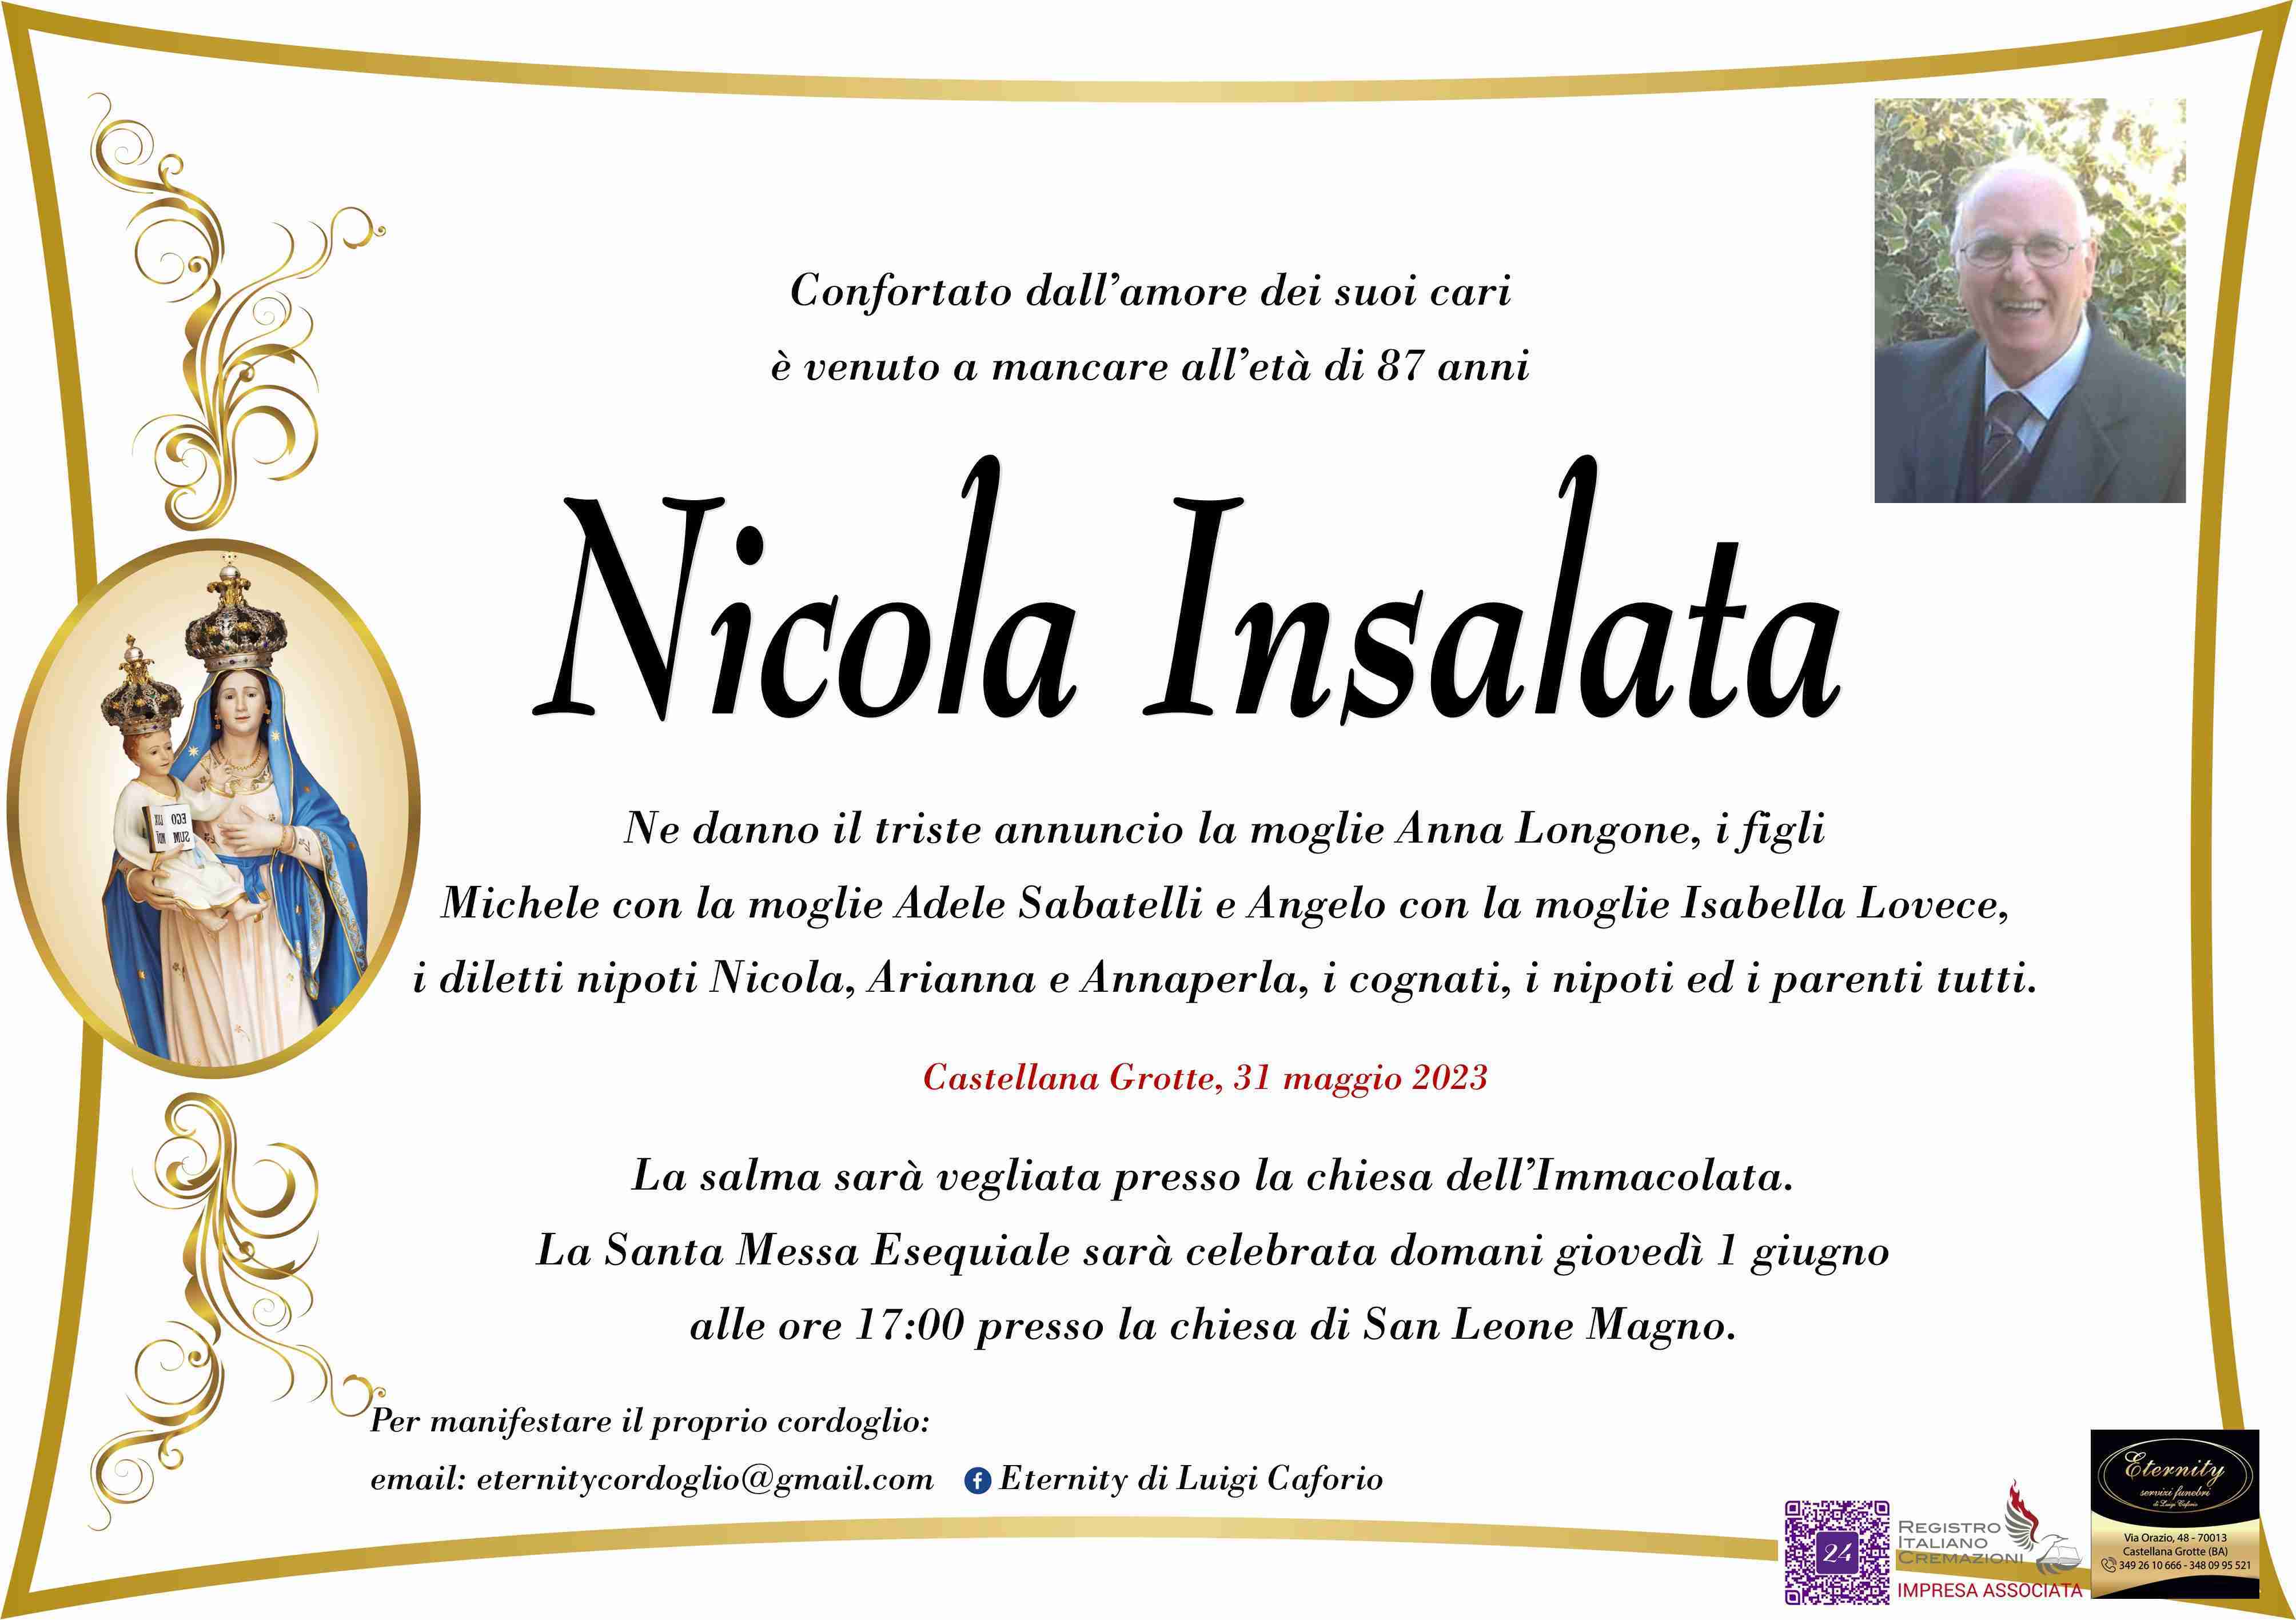 Nicola Insalata